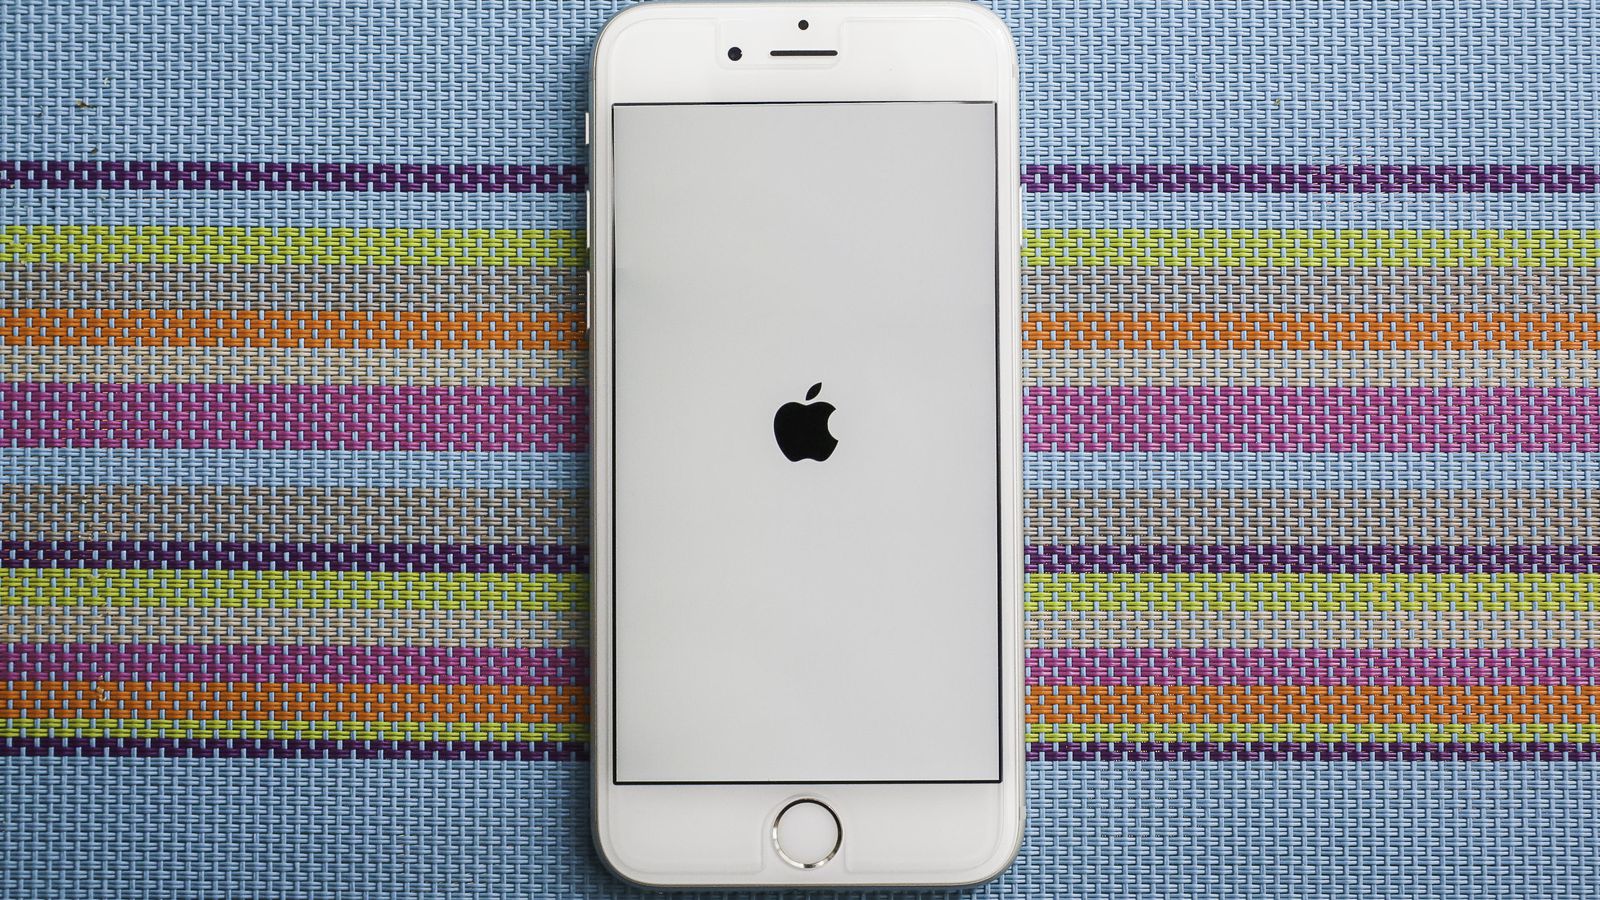 एप्पल आधिकारिक तौर पर के लिए माफी मांगी है कि जानबूझ कर धीमा कर देती है नीचे अपने iPhone